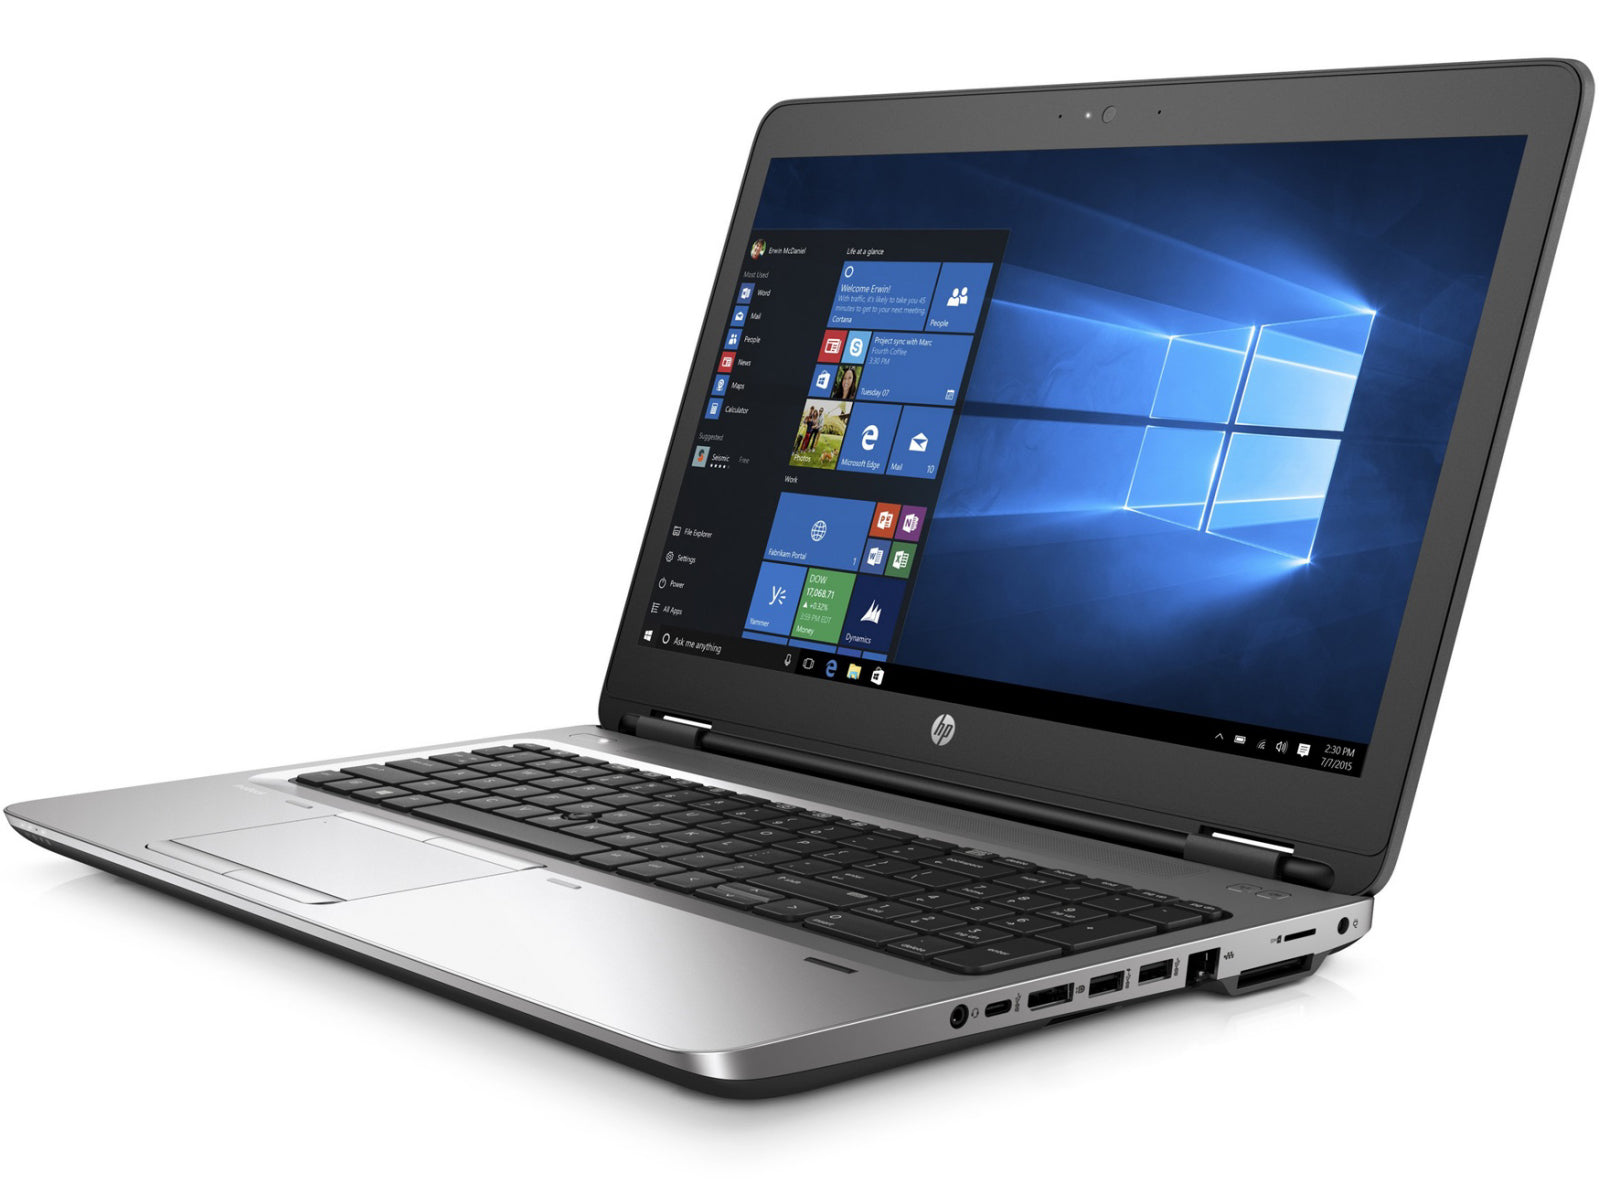 NOTEBOOK HP PROBOOK 650 G2 15.6” (i5 8GB 256GB SSD) Reacondicionado Grado B